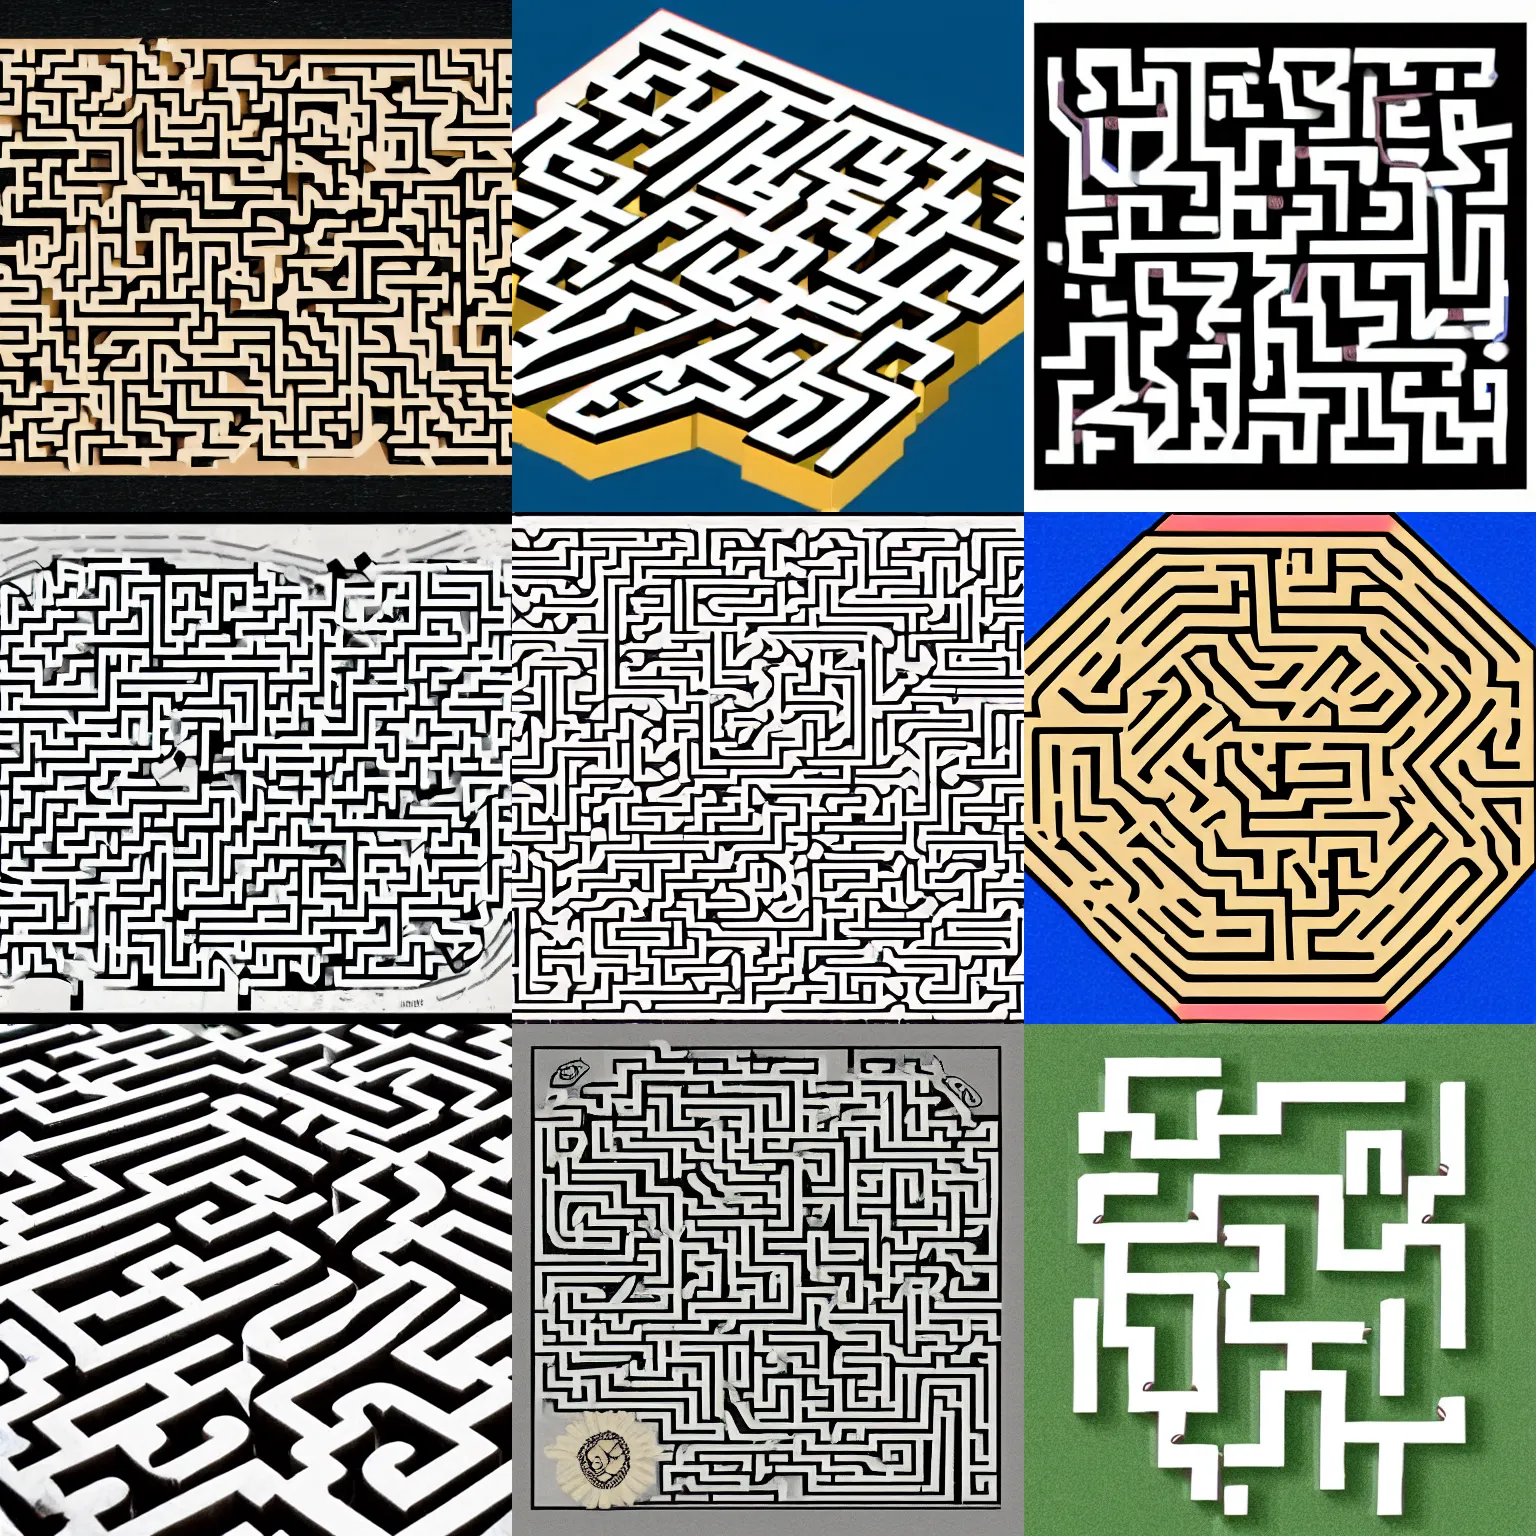 Prompt: a solvable maze